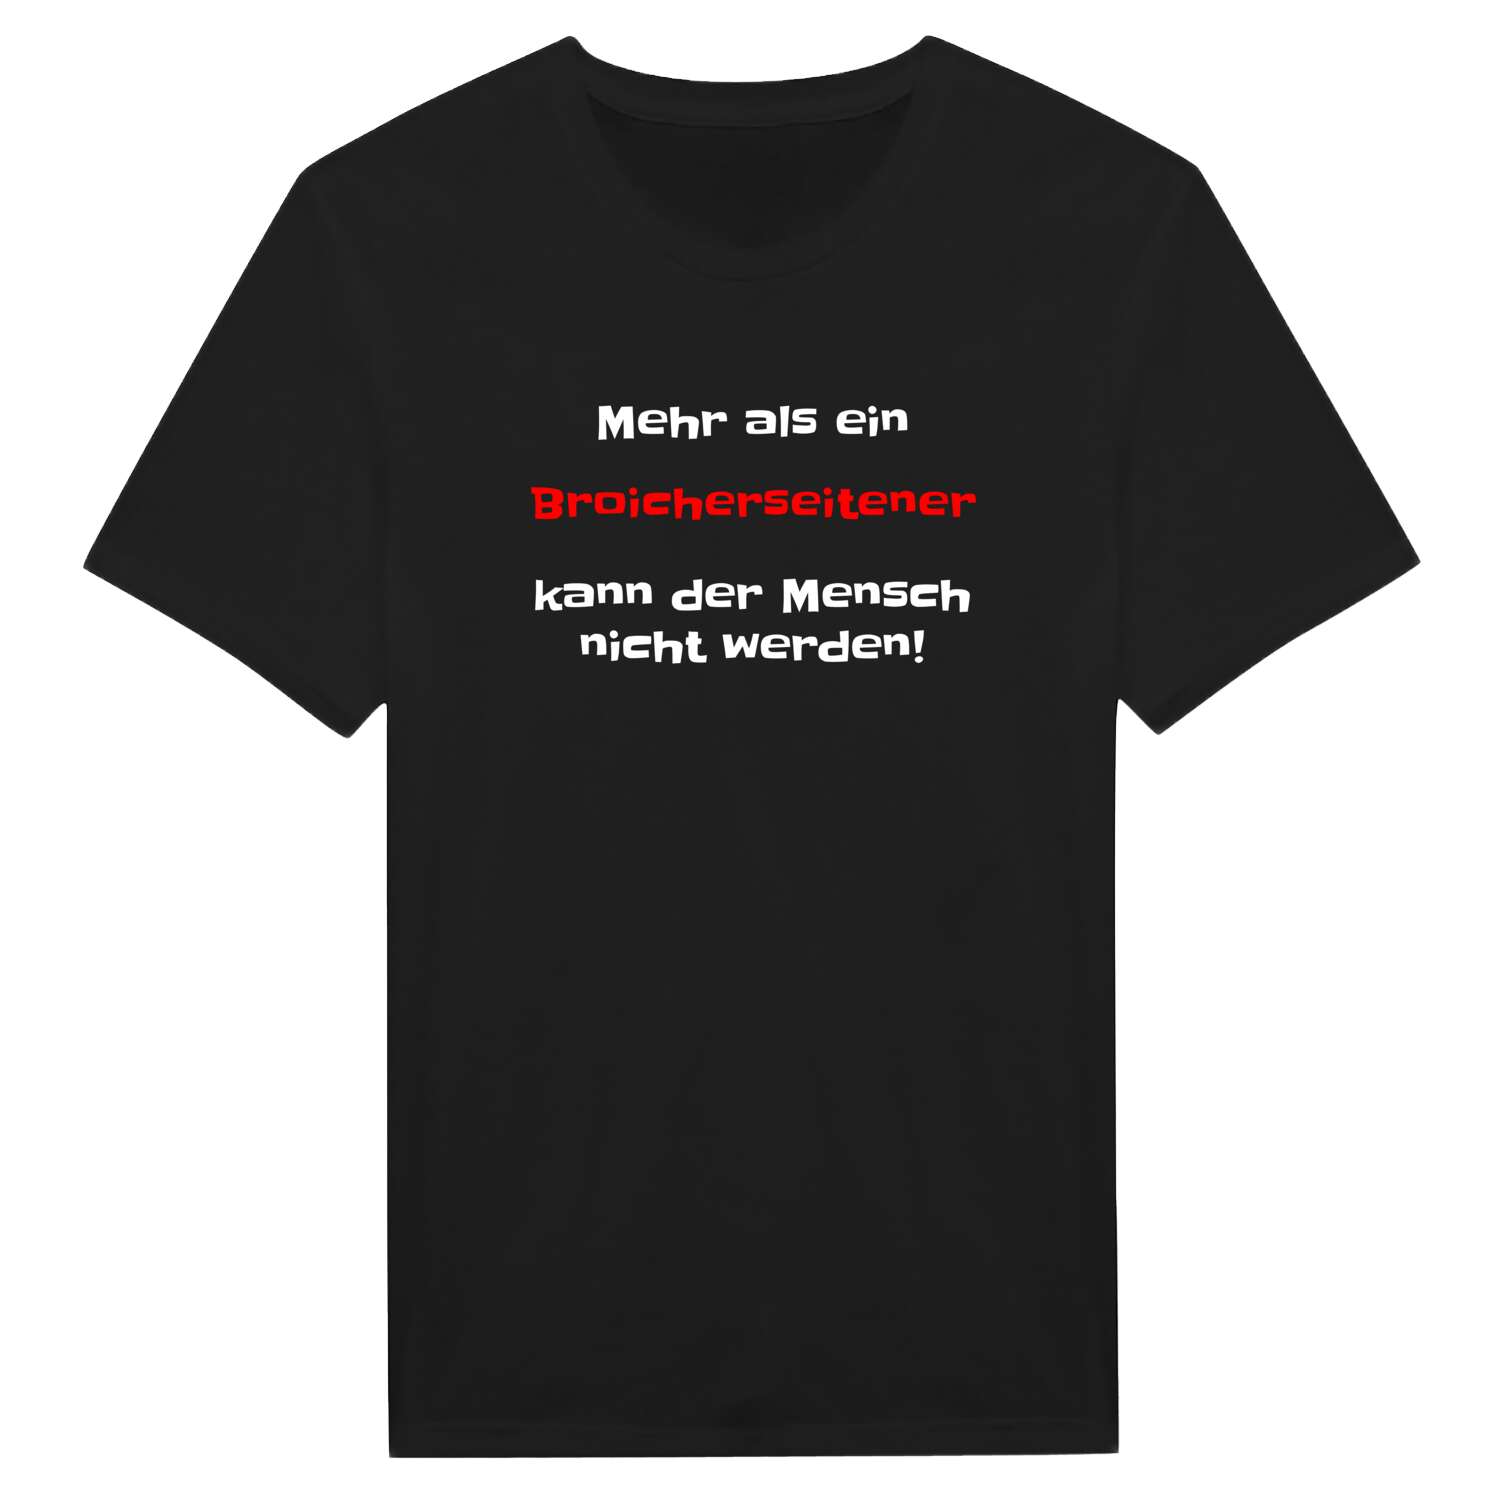 Broicherseite T-Shirt »Mehr als ein«